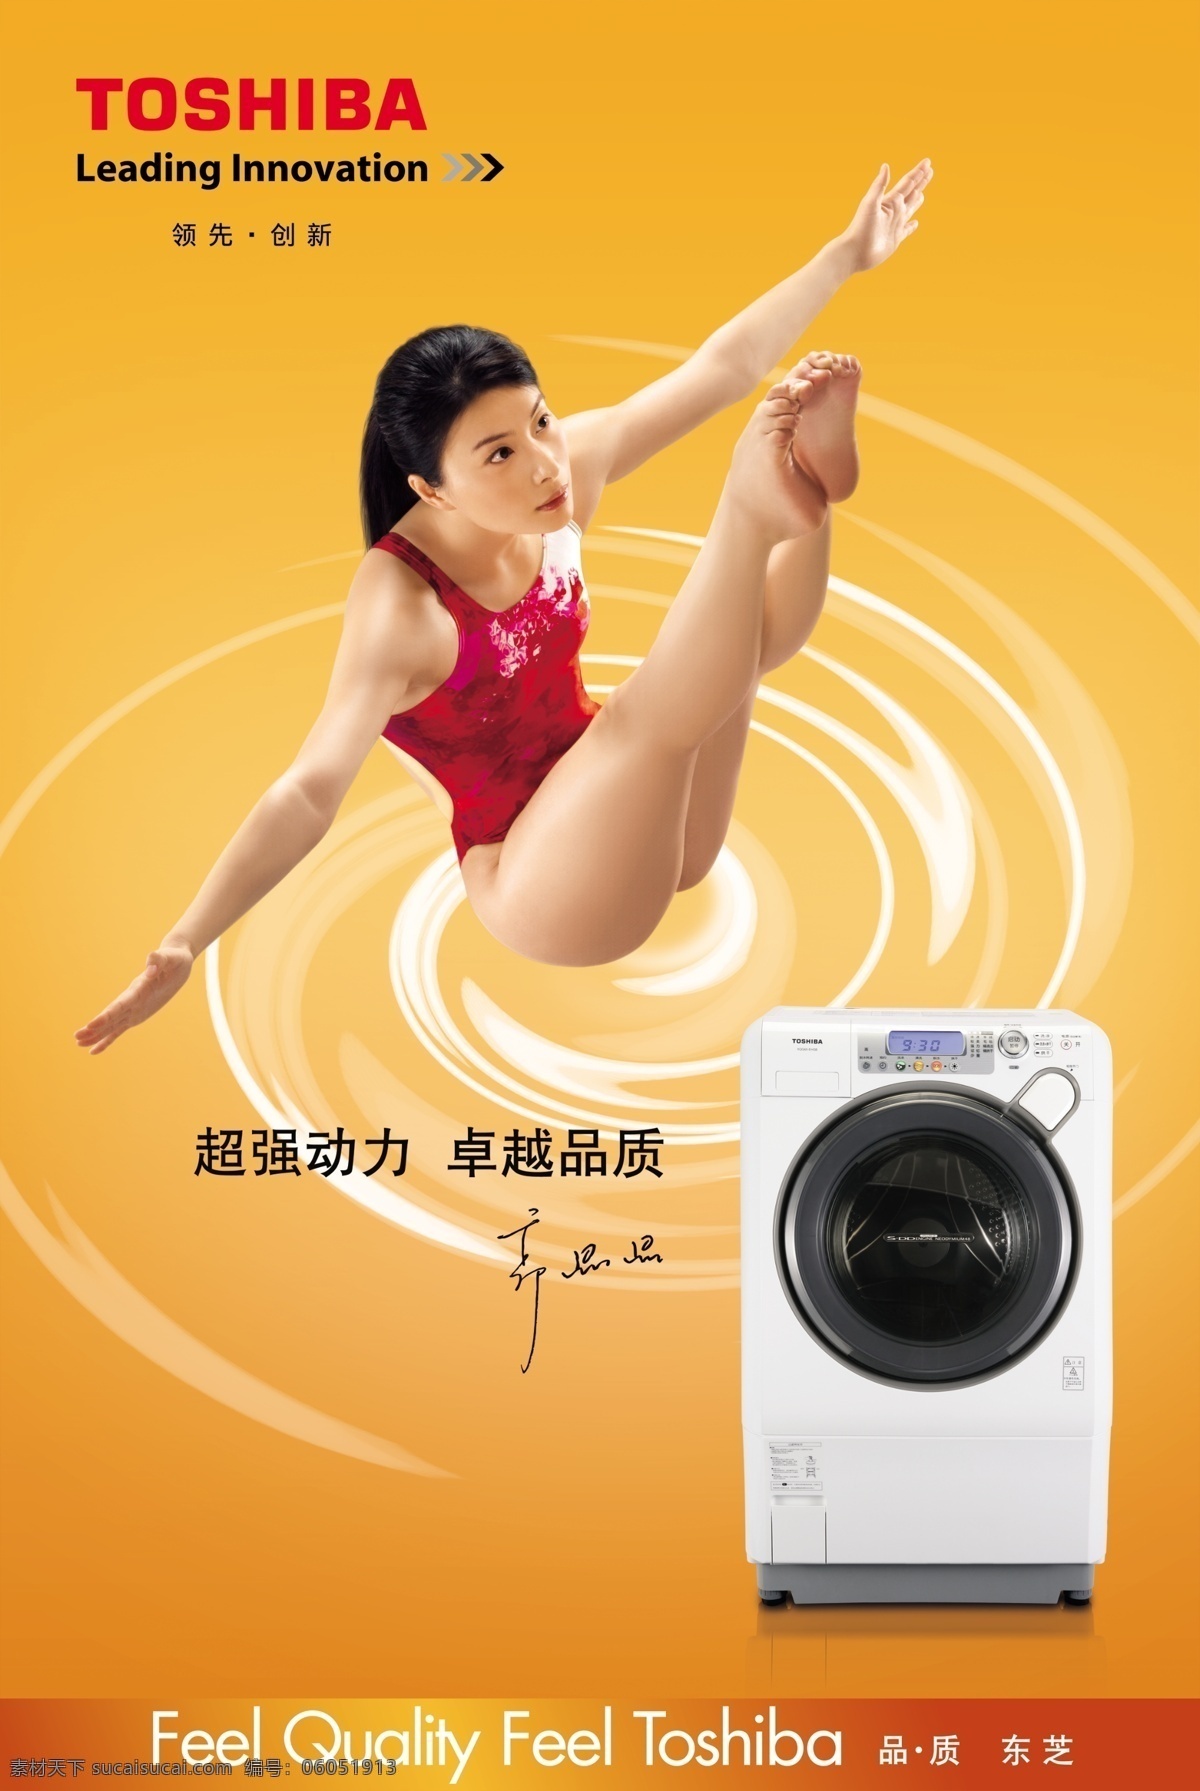 东芝 洗衣机 东芝洗衣机 跳水运动员 郭晶晶 超强动力 卓越品质 洗衣机广告 psd素材